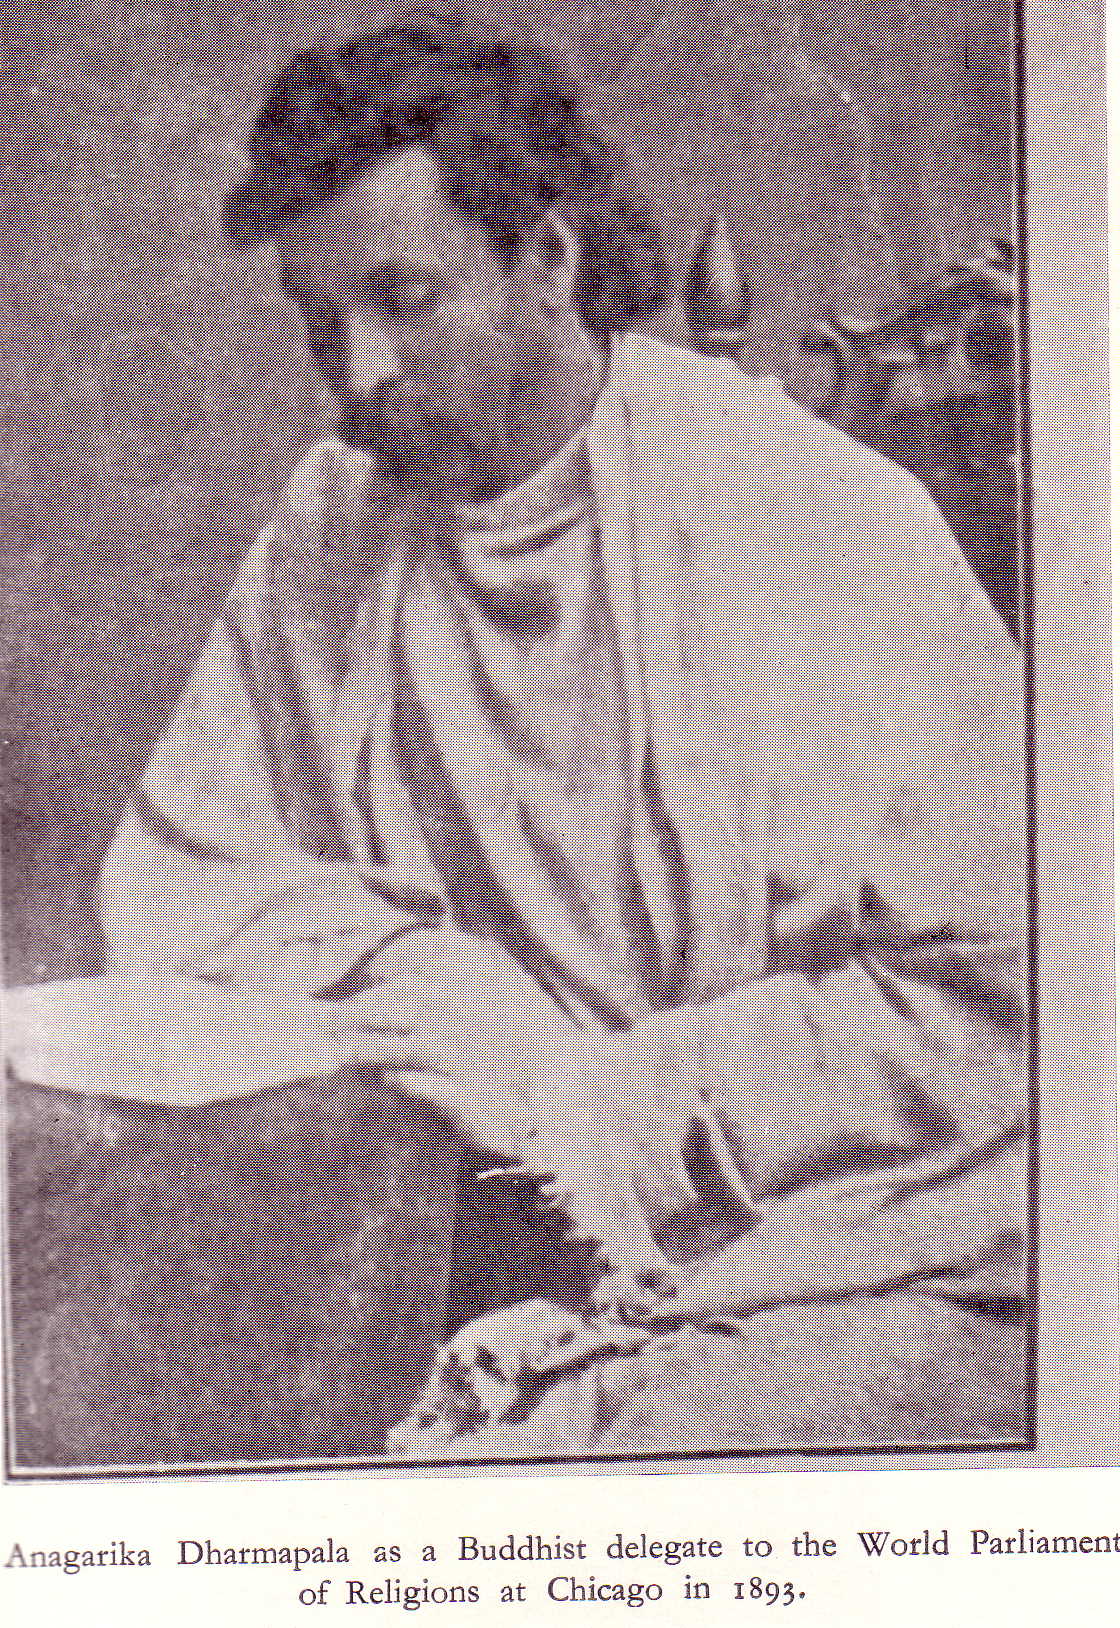 Anagarika Dharmapala in 1893